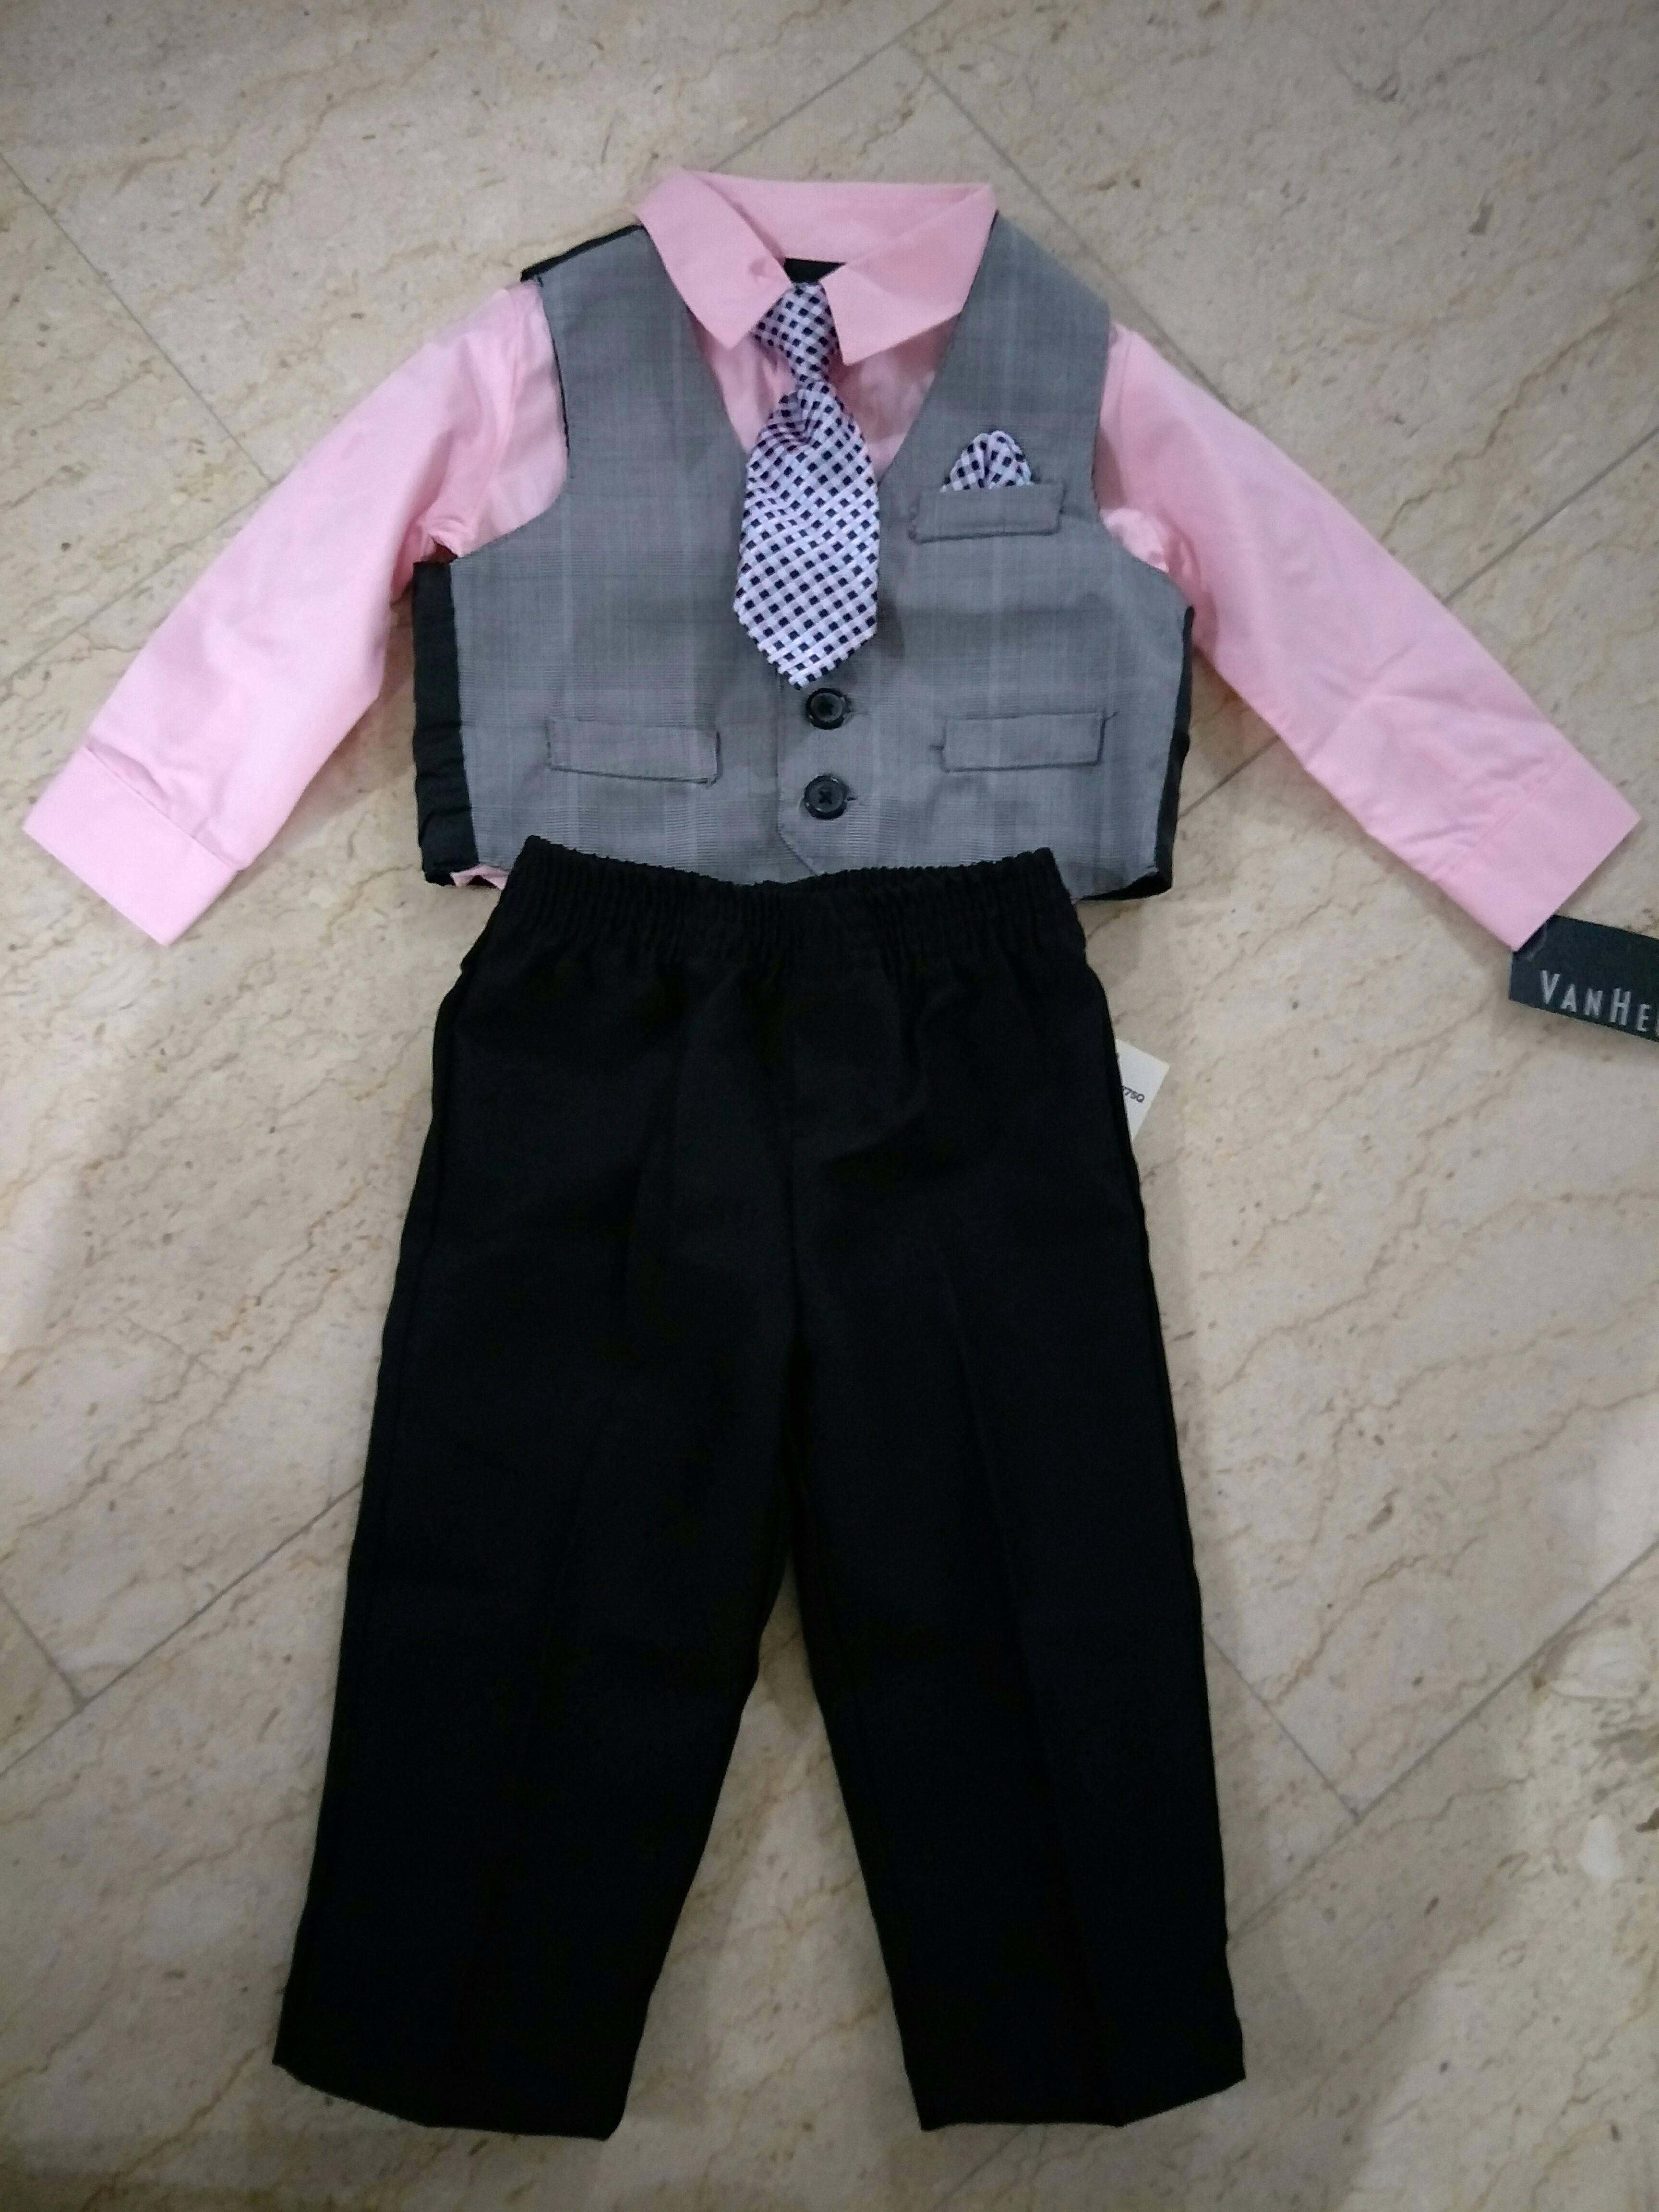 van heusen baby boy suit